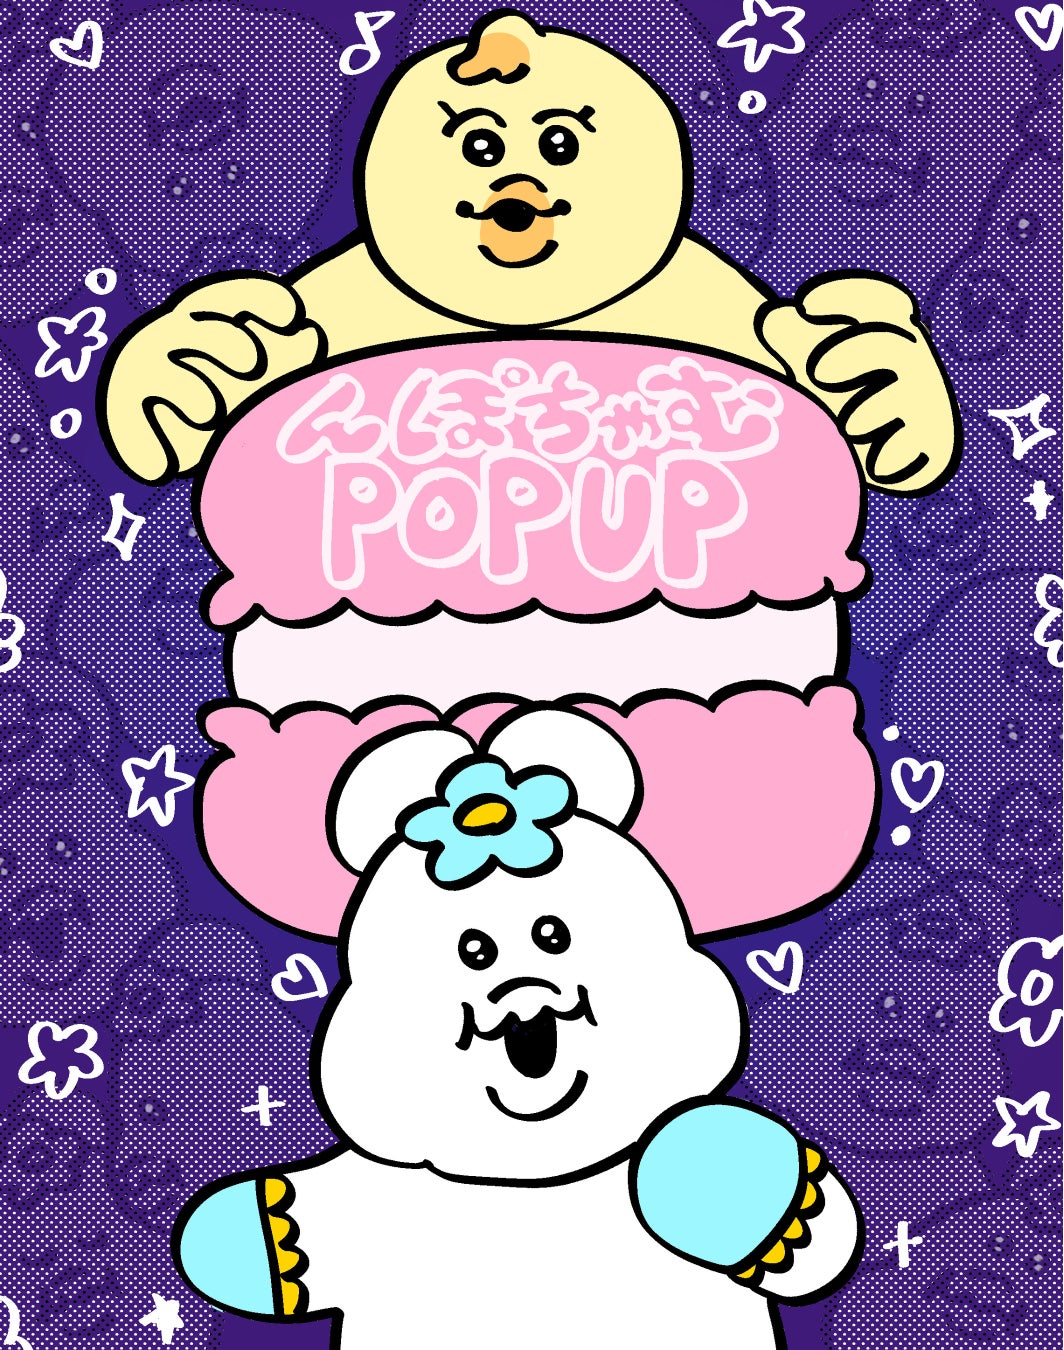 大人気キャラクター「んぽちゃむ」の期間限定POP UP SHOPが原宿にオープン！